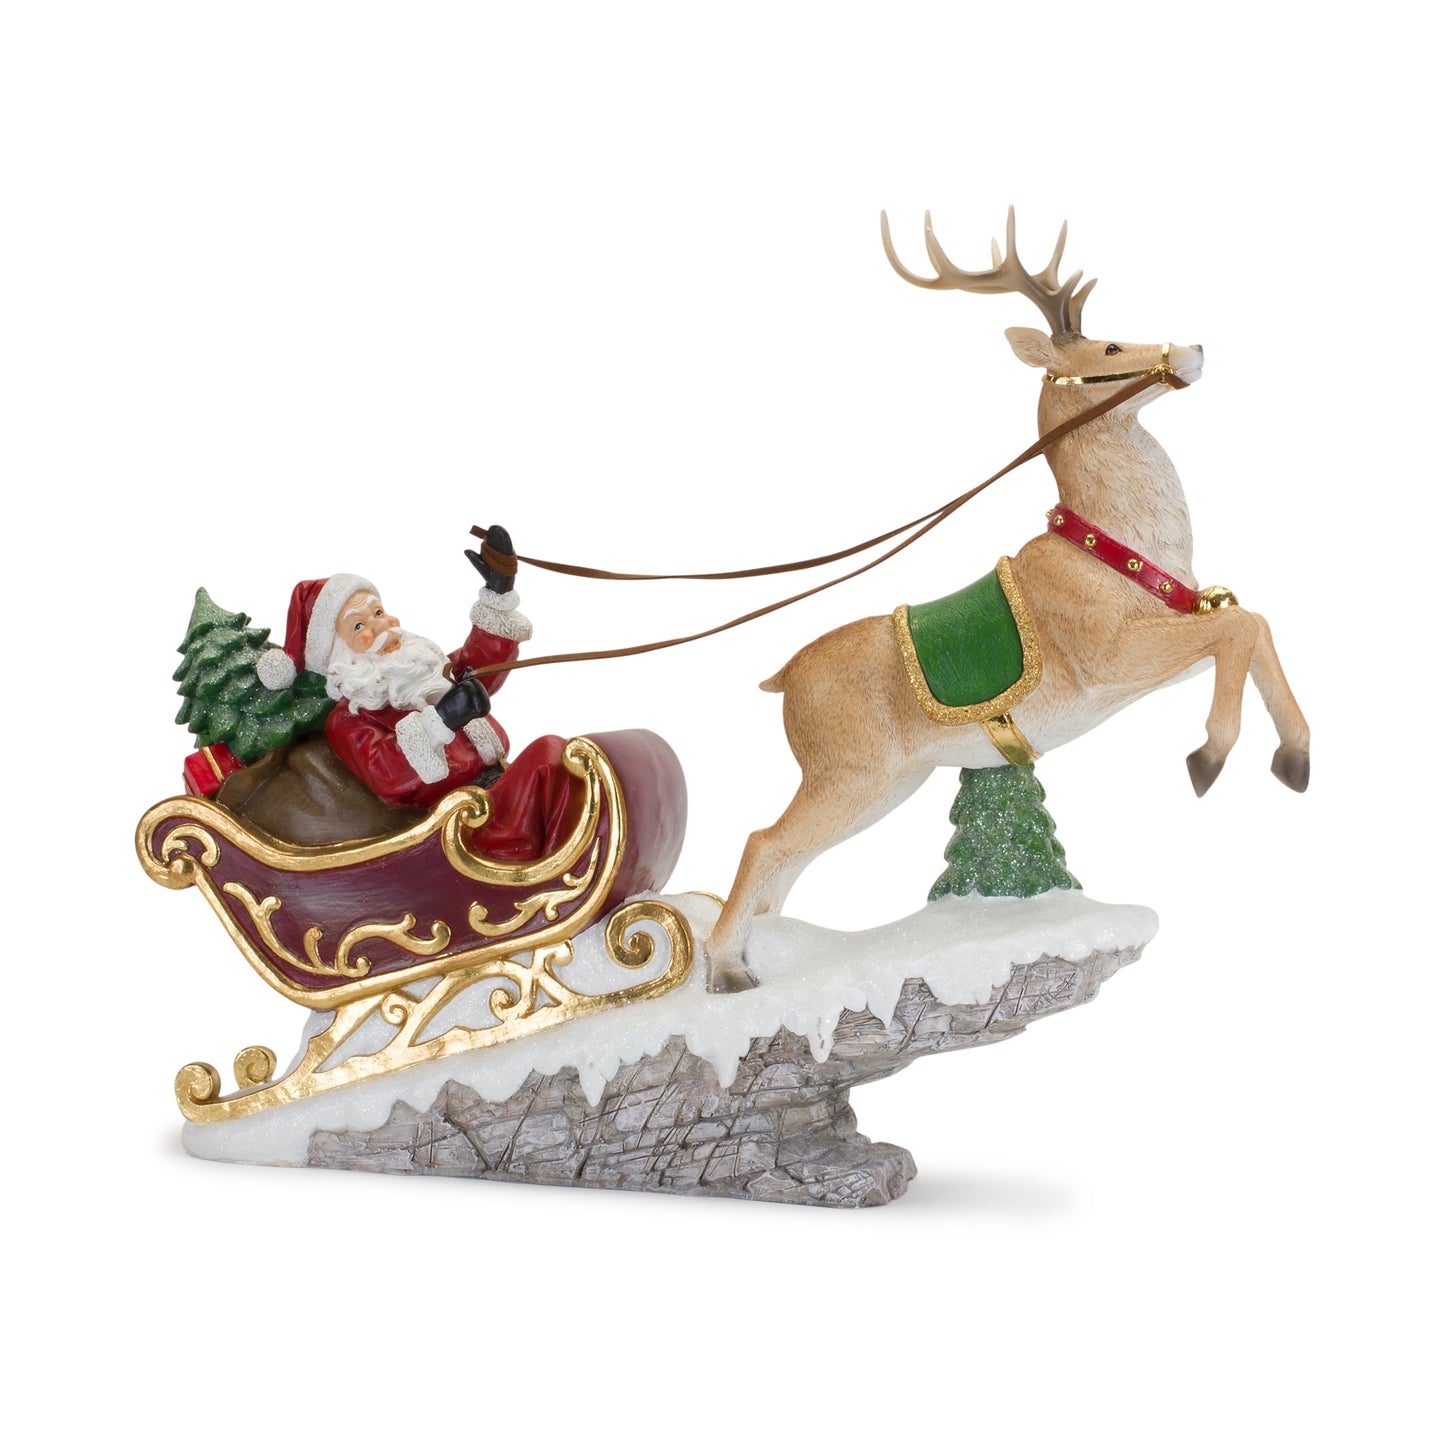 Santa in Sleigh with Reindeer Figurine 21.5"L